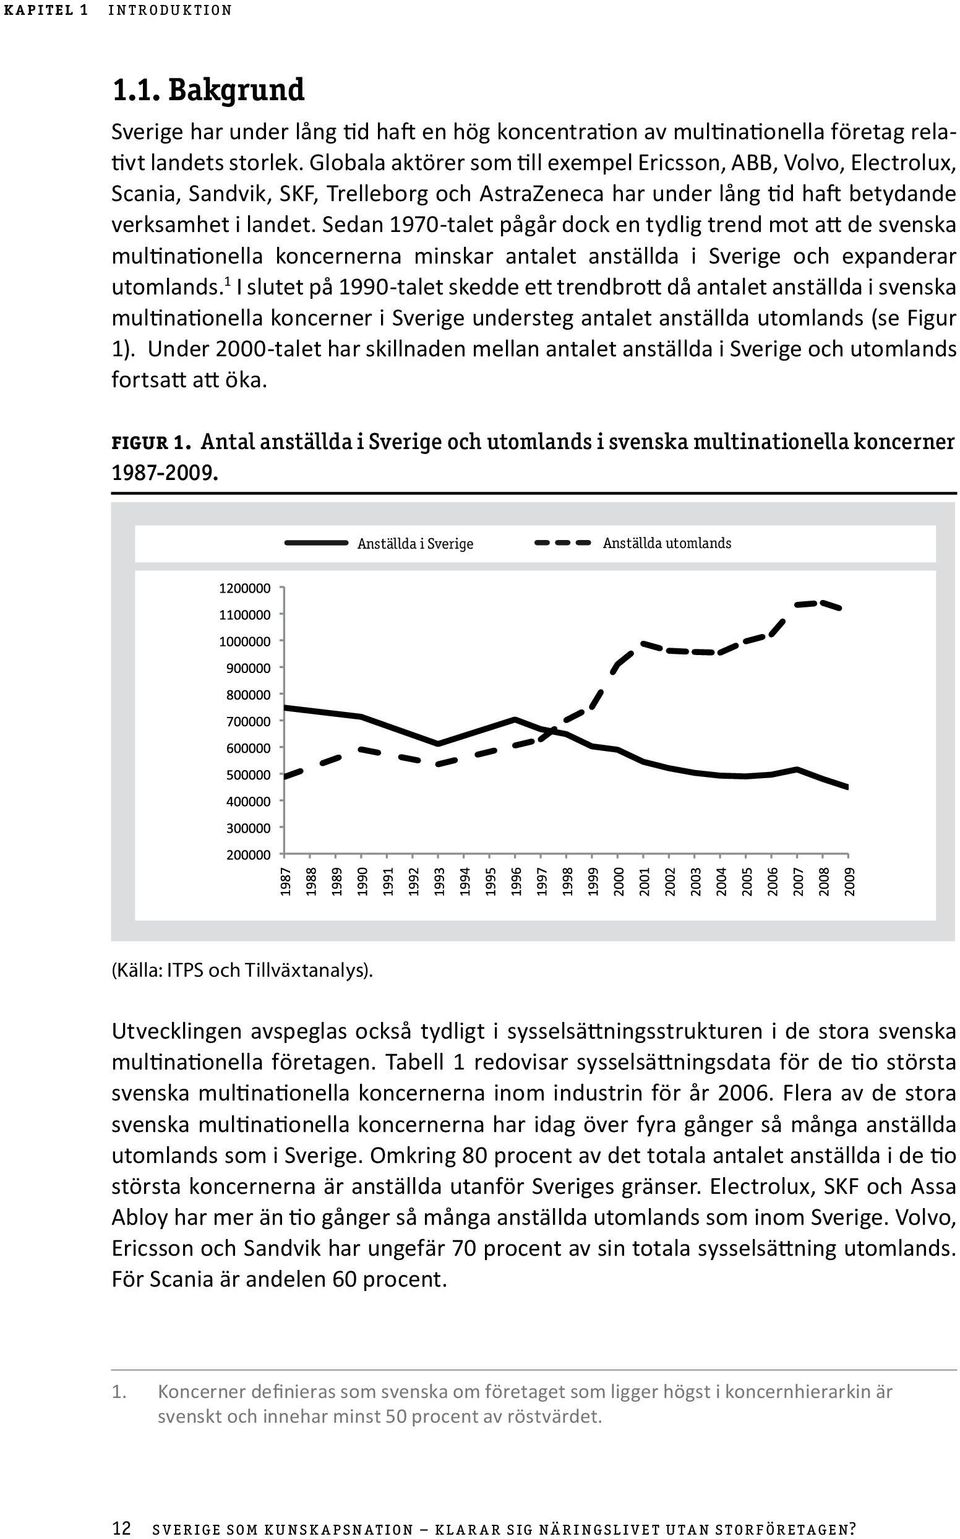 Sedan 1970-talet pågår dock en tydlig trend mot att de svenska multinationella koncernerna minskar antalet anställda i Sverige och expanderar utomlands.